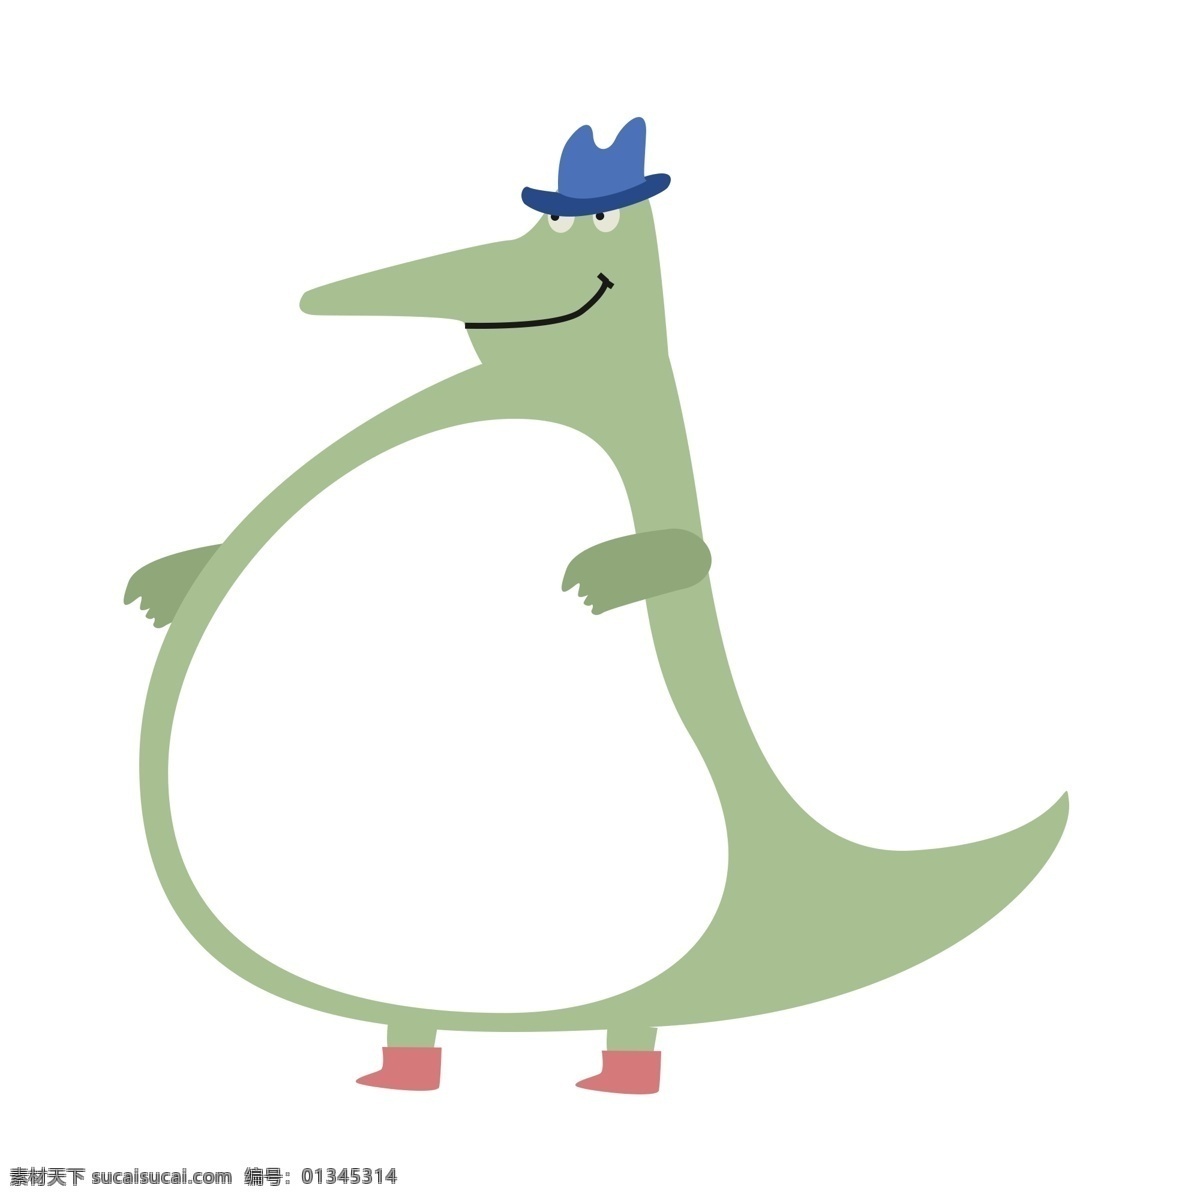 手绘 恐龙 边框 插画 卡通恐龙 蓝色帽子 黑色鞋子 恐龙插画 恐龙边框